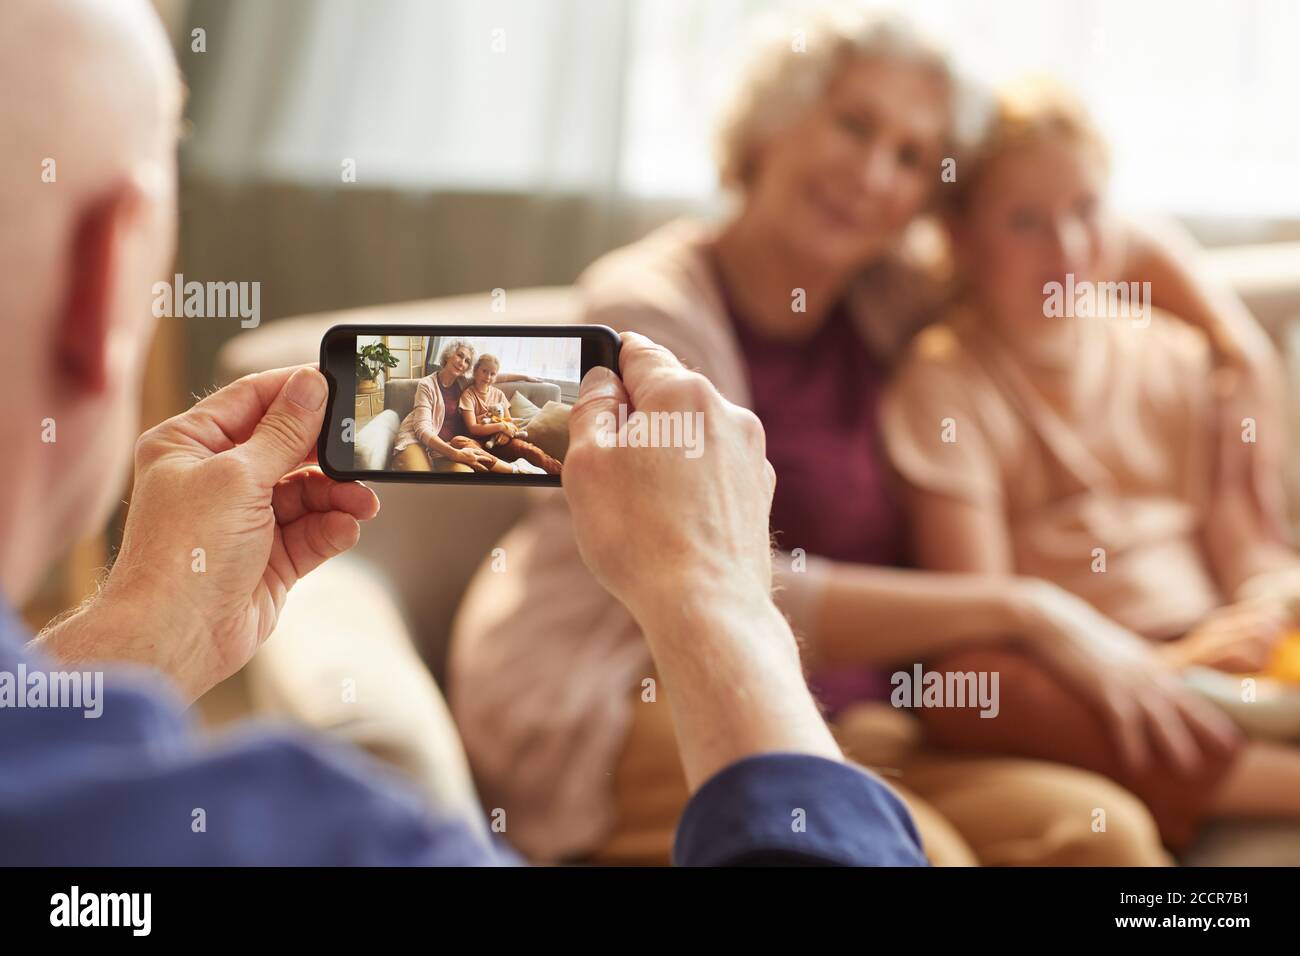 Porträt eines älteren Mannes, der Smartphone-Foto von Frau und Enkelin für Familienerinnerungen macht, Fokus auf Smartphone-Bildschirm, Kopierraum Stockfoto